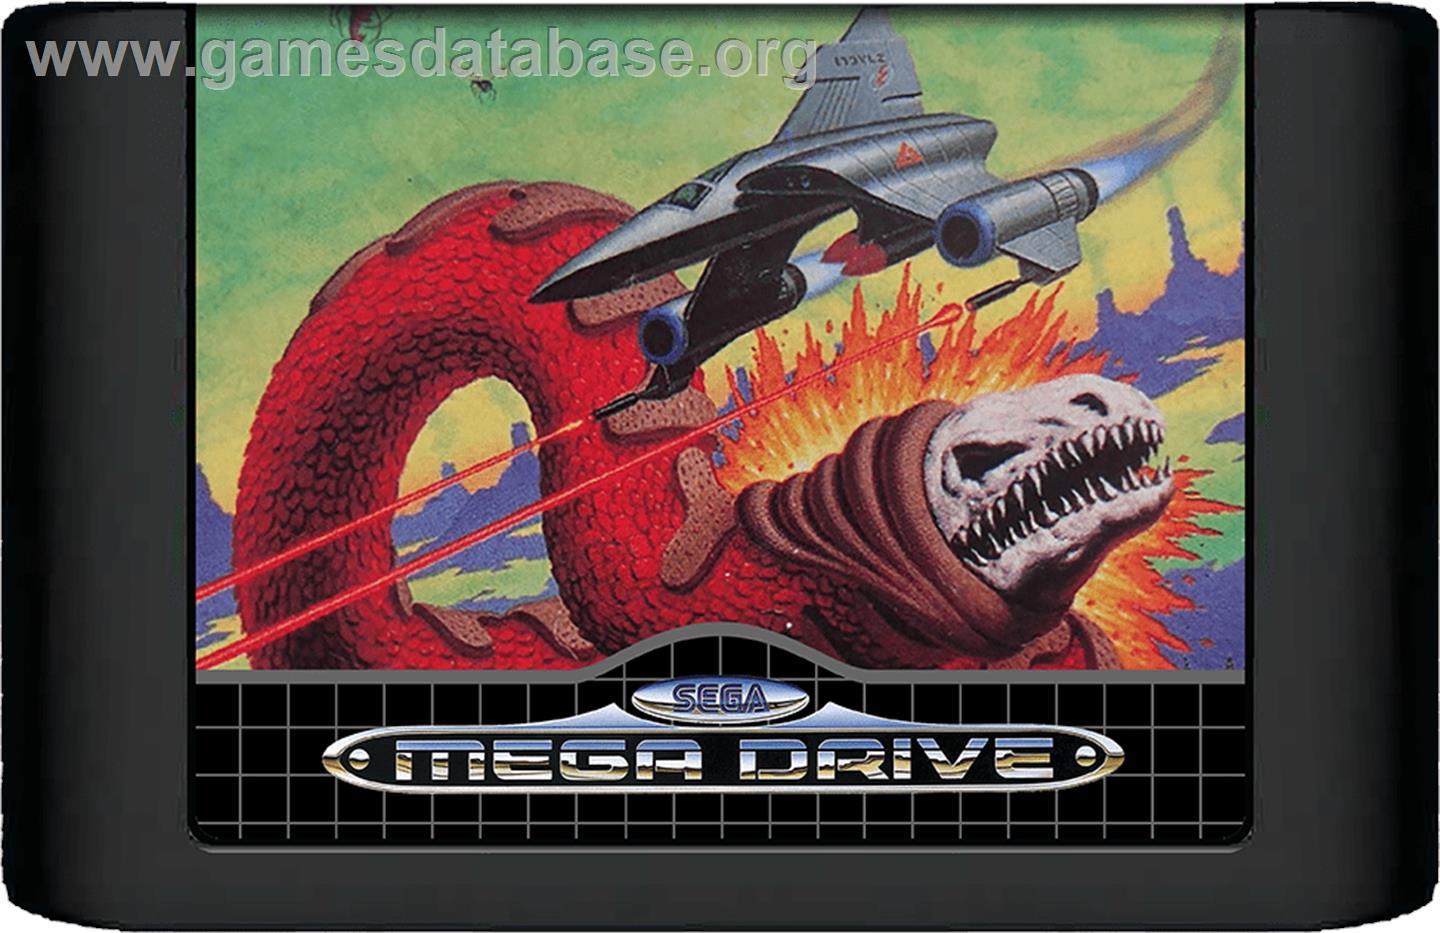 Bio-Hazard Battle - Sega Genesis - Artwork - Cartridge